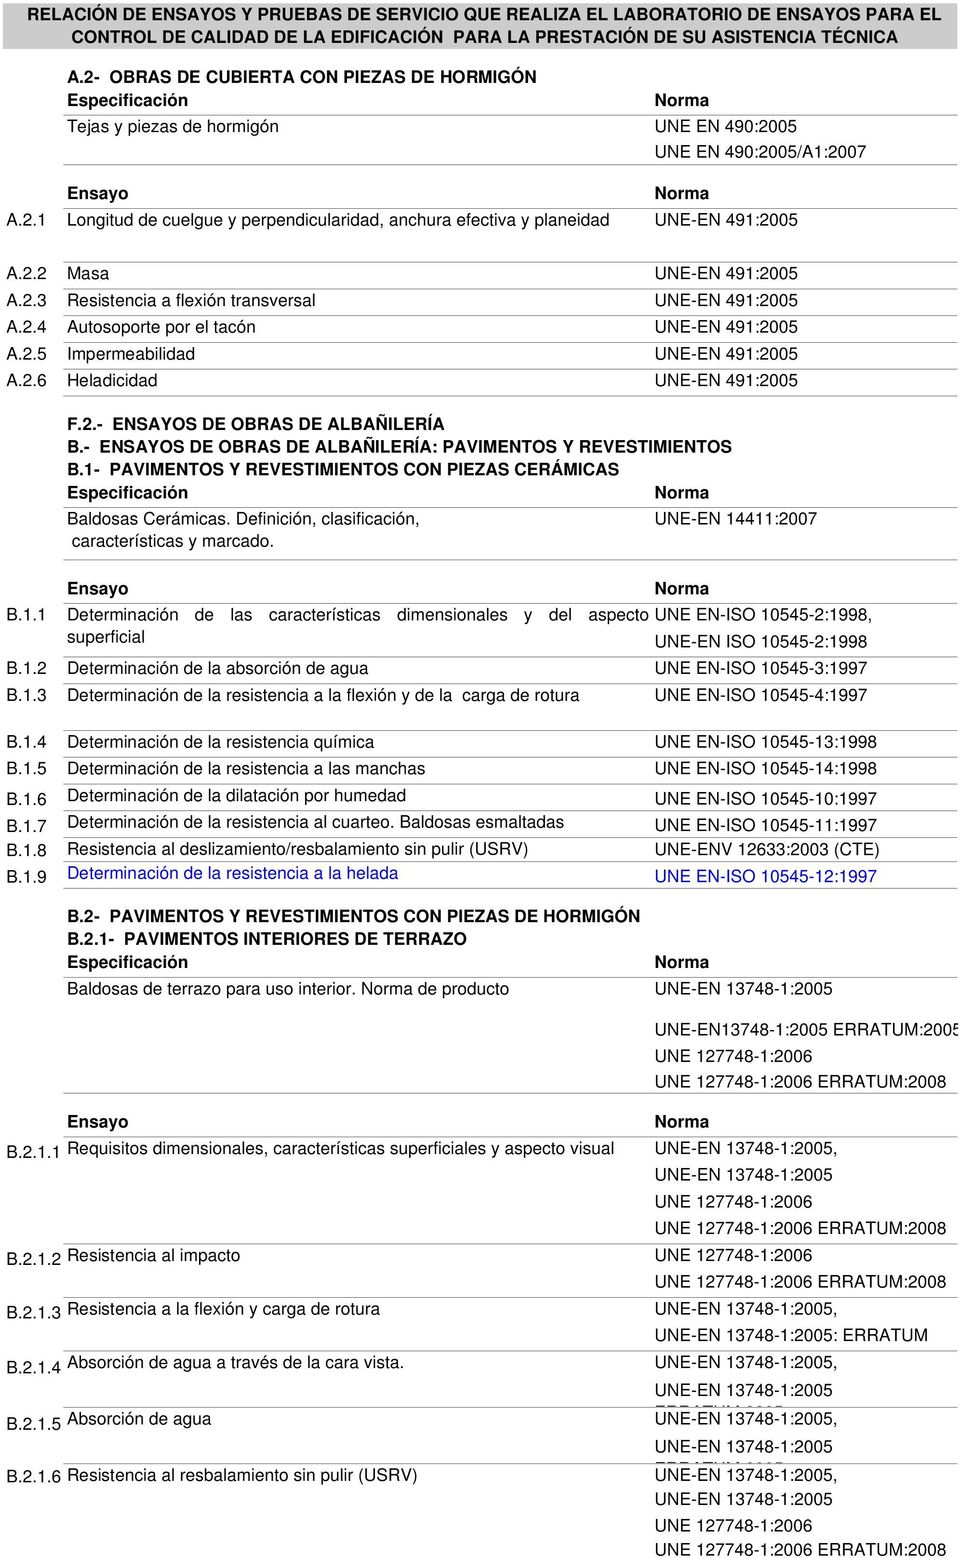 2.- ENSAYOS DE OBRAS DE ALBAÑILERÍA B.- ENSAYOS DE OBRAS DE ALBAÑILERÍA: PAVIMENTOS Y REVESTIMIENTOS B.1- PAVIMENTOS Y REVESTIMIENTOS CON PIEZAS CERÁMICAS Baldosas Cerámicas.